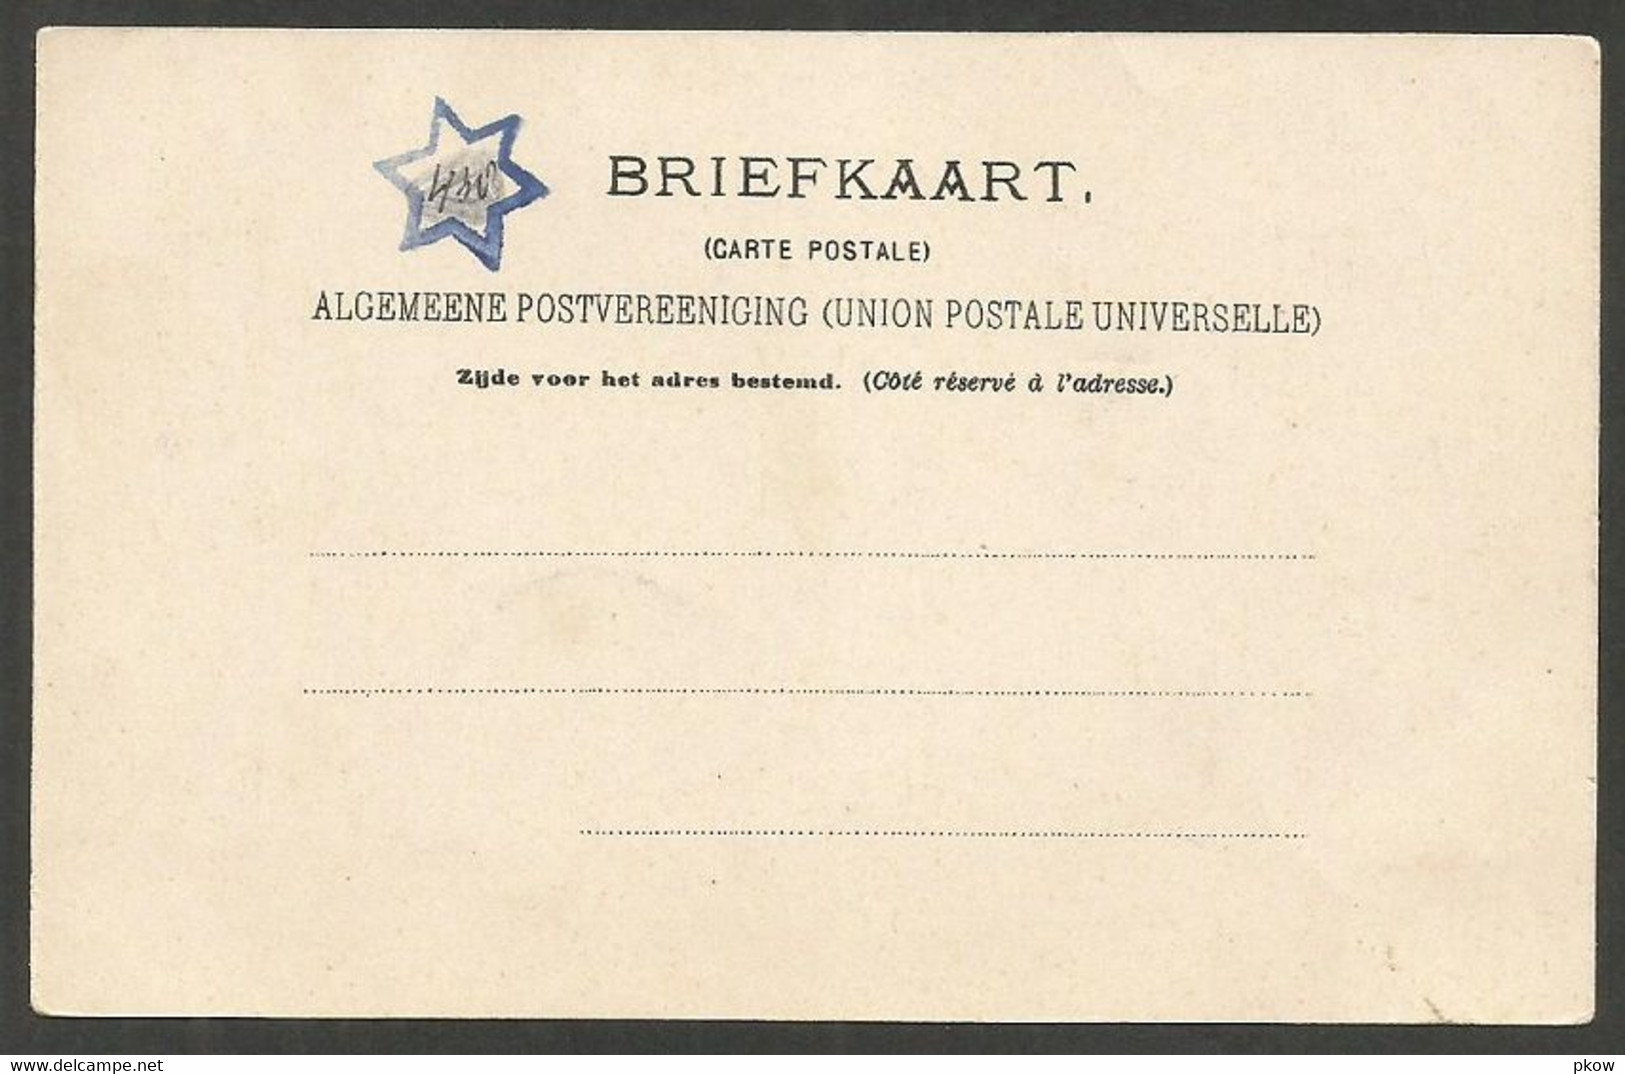 Amsterdam, Met Reclame Frans Geels, Koffie, Thee, Chocolaad, Zaak Zat 150 Jaar In De Warmoesstraat, Ca. 1905 - Amsterdam